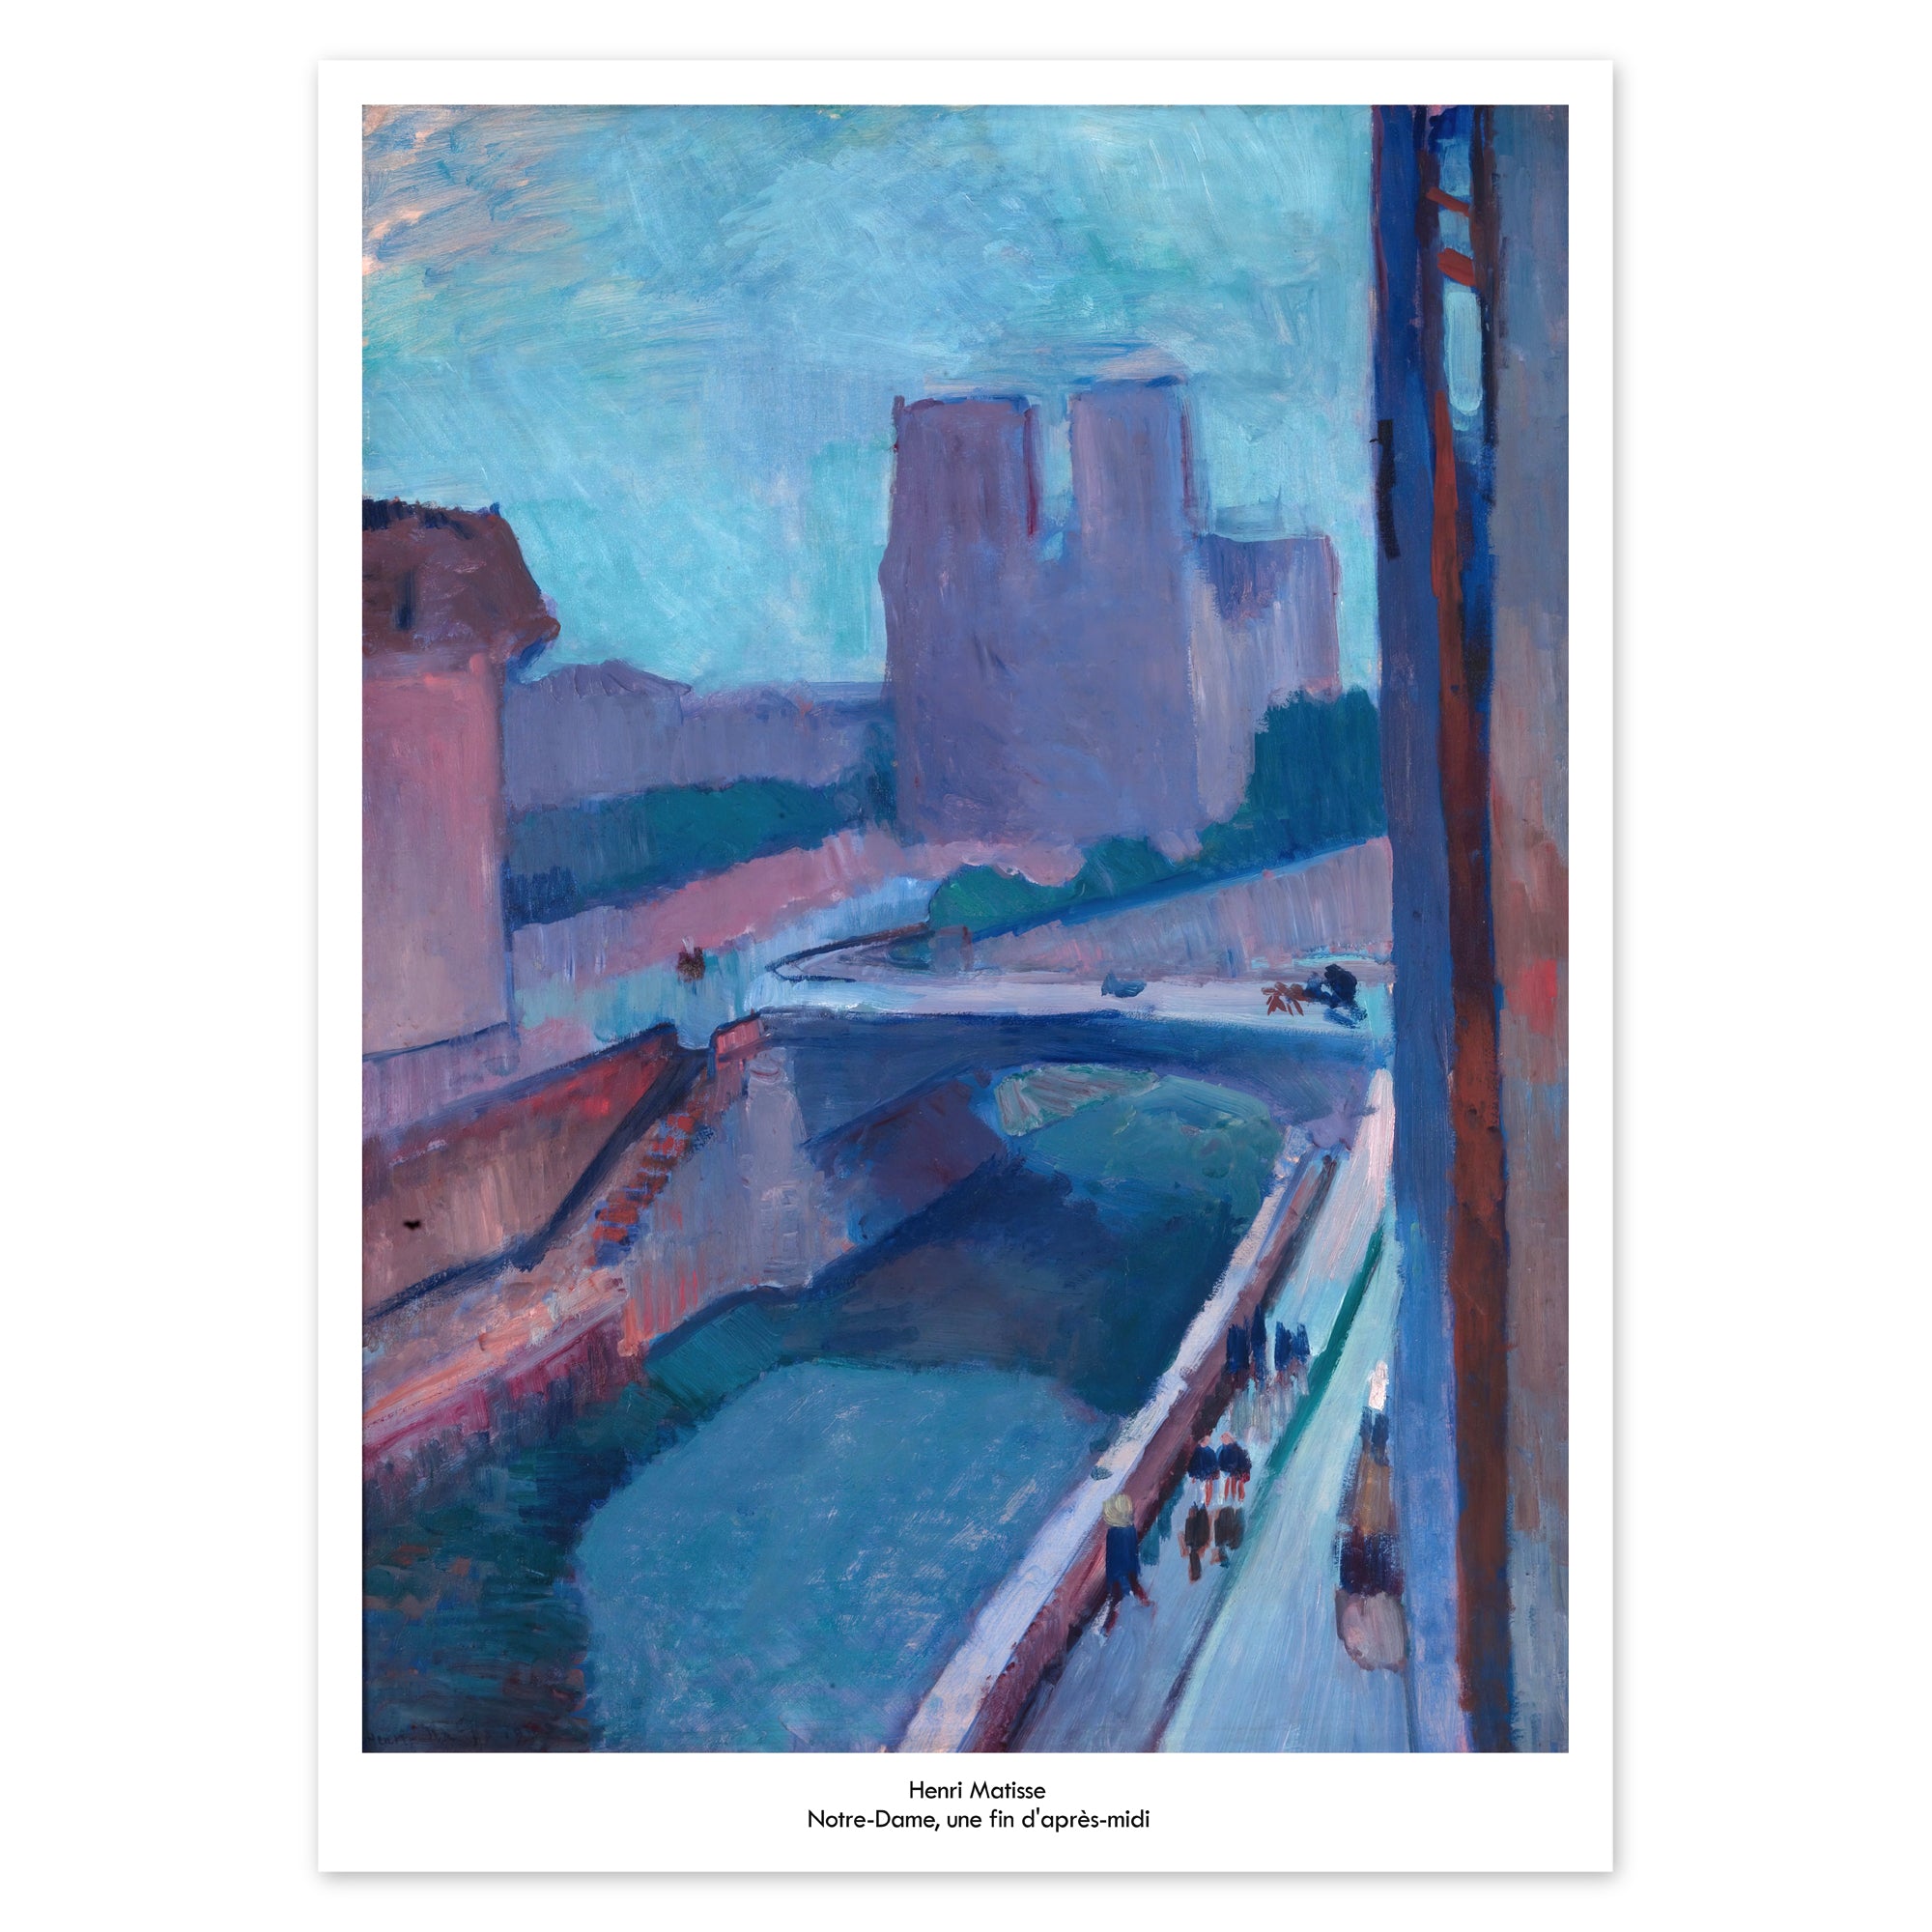 Henri Matisse Poster - Notre-Dame, une fin d'après-midi